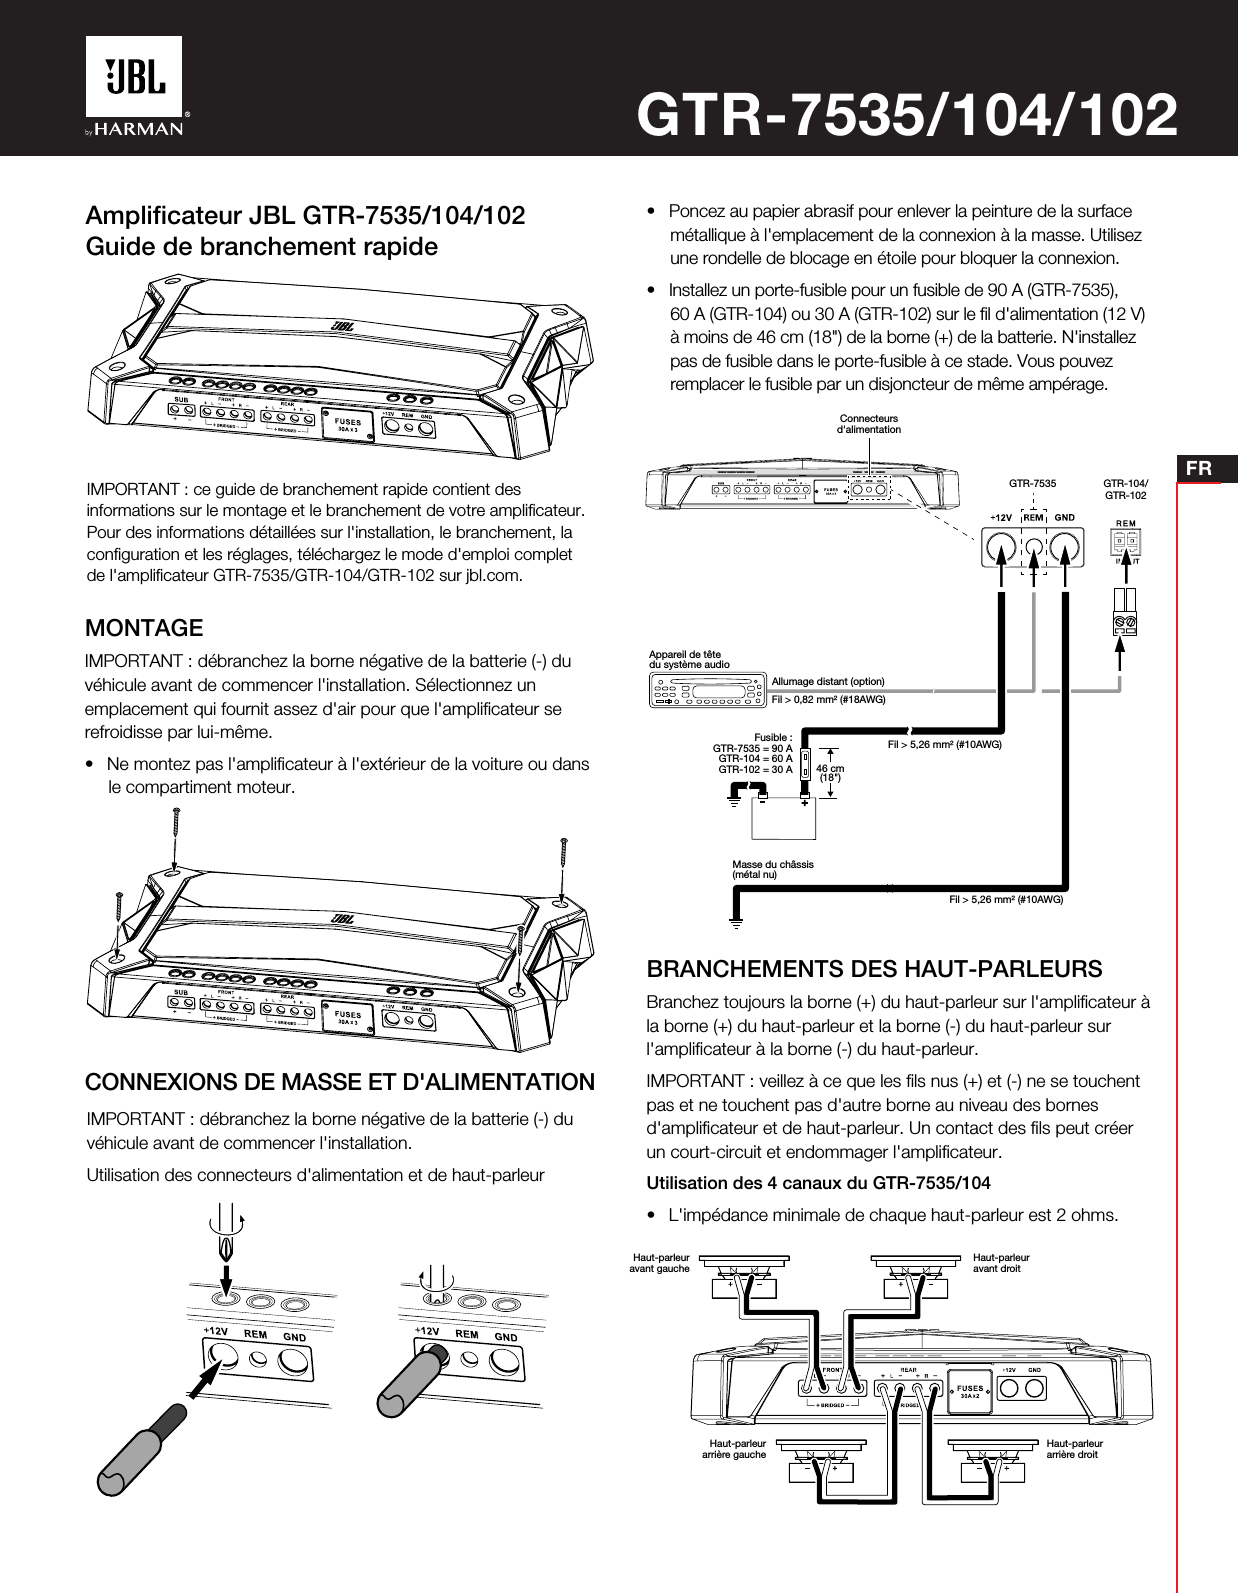 FRAmpliﬁcateur JBL GTR-7535/104/102Guide de branchement rapideMONTAGEIMPORTANT: débranchez la borne négative de la batterie (-) duvéhicule avant de commencer l&apos;installation. Sélectionnez unemplacement qui fournit assez d&apos;air pour que l&apos;ampliﬁcateur serefroidisse par lui-même.• Ne montez pas l&apos;ampliﬁcateur à l&apos;extérieur de la voiture ou dansle compartiment moteur.BRANCHEMENTS DES HAUT-PARLEURSBranchez toujours la borne (+) du haut-parleur sur l&apos;ampliﬁcateur àla borne (+) du haut-parleur et la borne (-) du haut-parleur surl&apos;ampliﬁcateur à la borne (-) du haut-parleur.IMPORTANT: veillez à ce que les ﬁls nus (+) et (-) ne se touchentpas et ne touchent pas d&apos;autre borne au niveau des bornesd&apos;ampliﬁcateur et de haut-parleur. Un contact des ﬁls peut créerun court-circuit et endommager l&apos;ampliﬁcateur.Utilisation des 4 canaux du GTR-7535/104• L&apos;impédance minimale de chaque haut-parleur est 2 ohms.IMPORTANT: ce guide de branchement rapide contient desinformations sur le montage et le branchement de votre ampliﬁcateur.Pour des informations détaillées sur l&apos;installation, le branchement, laconﬁguration et les réglages, téléchargez le mode d&apos;emploi completde l&apos;ampliﬁcateur GTR-7535/GTR-104/GTR-102 sur jbl.com.IMPORTANT: débranchez la borne négative de la batterie (-) duvéhicule avant de commencer l&apos;installation.Utilisation des connecteurs d&apos;alimentation et de haut-parleurCONNEXIONS DE MASSE ET D&apos;ALIMENTATIONGTR-7535/104/102• Poncez au papier abrasif pour enlever la peinture de la surfacemétallique à l&apos;emplacement de la connexion à la masse. Utilisezune rondelle de blocage en étoile pour bloquer la connexion.• Installez un porte-fusible pour un fusible de 90A (GTR-7535),60 A (GTR-104) ou 30 A (GTR-102) sur le ﬁl d&apos;alimentation (12 V)à moins de 46 cm (18&quot;) de la borne (+) de la batterie. N&apos;installezpas de fusible dans le porte-fusible à ce stade. Vous pouvezremplacer le fusible par un disjoncteur de même ampérage.Connecteursd&apos;alimentationGTR-7535 GTR-104/GTR-102Appareil de têtedu système audioMasse du châssis(métal nu)46cm(18&quot;)Fusible :GTR-7535 = 90AGTR-104 = 60AGTR-102 = 30AAllumage distant (option)Fil &gt; 0,82 mm² (#18AWG)Fil &gt; 5,26 mm² (#10AWG)Fil &gt; 5,26 mm² (#10AWG)Haut-parleuravant gaucheHaut-parleurarrière gauche Haut-parleurarrière droitHaut-parleuravant droit